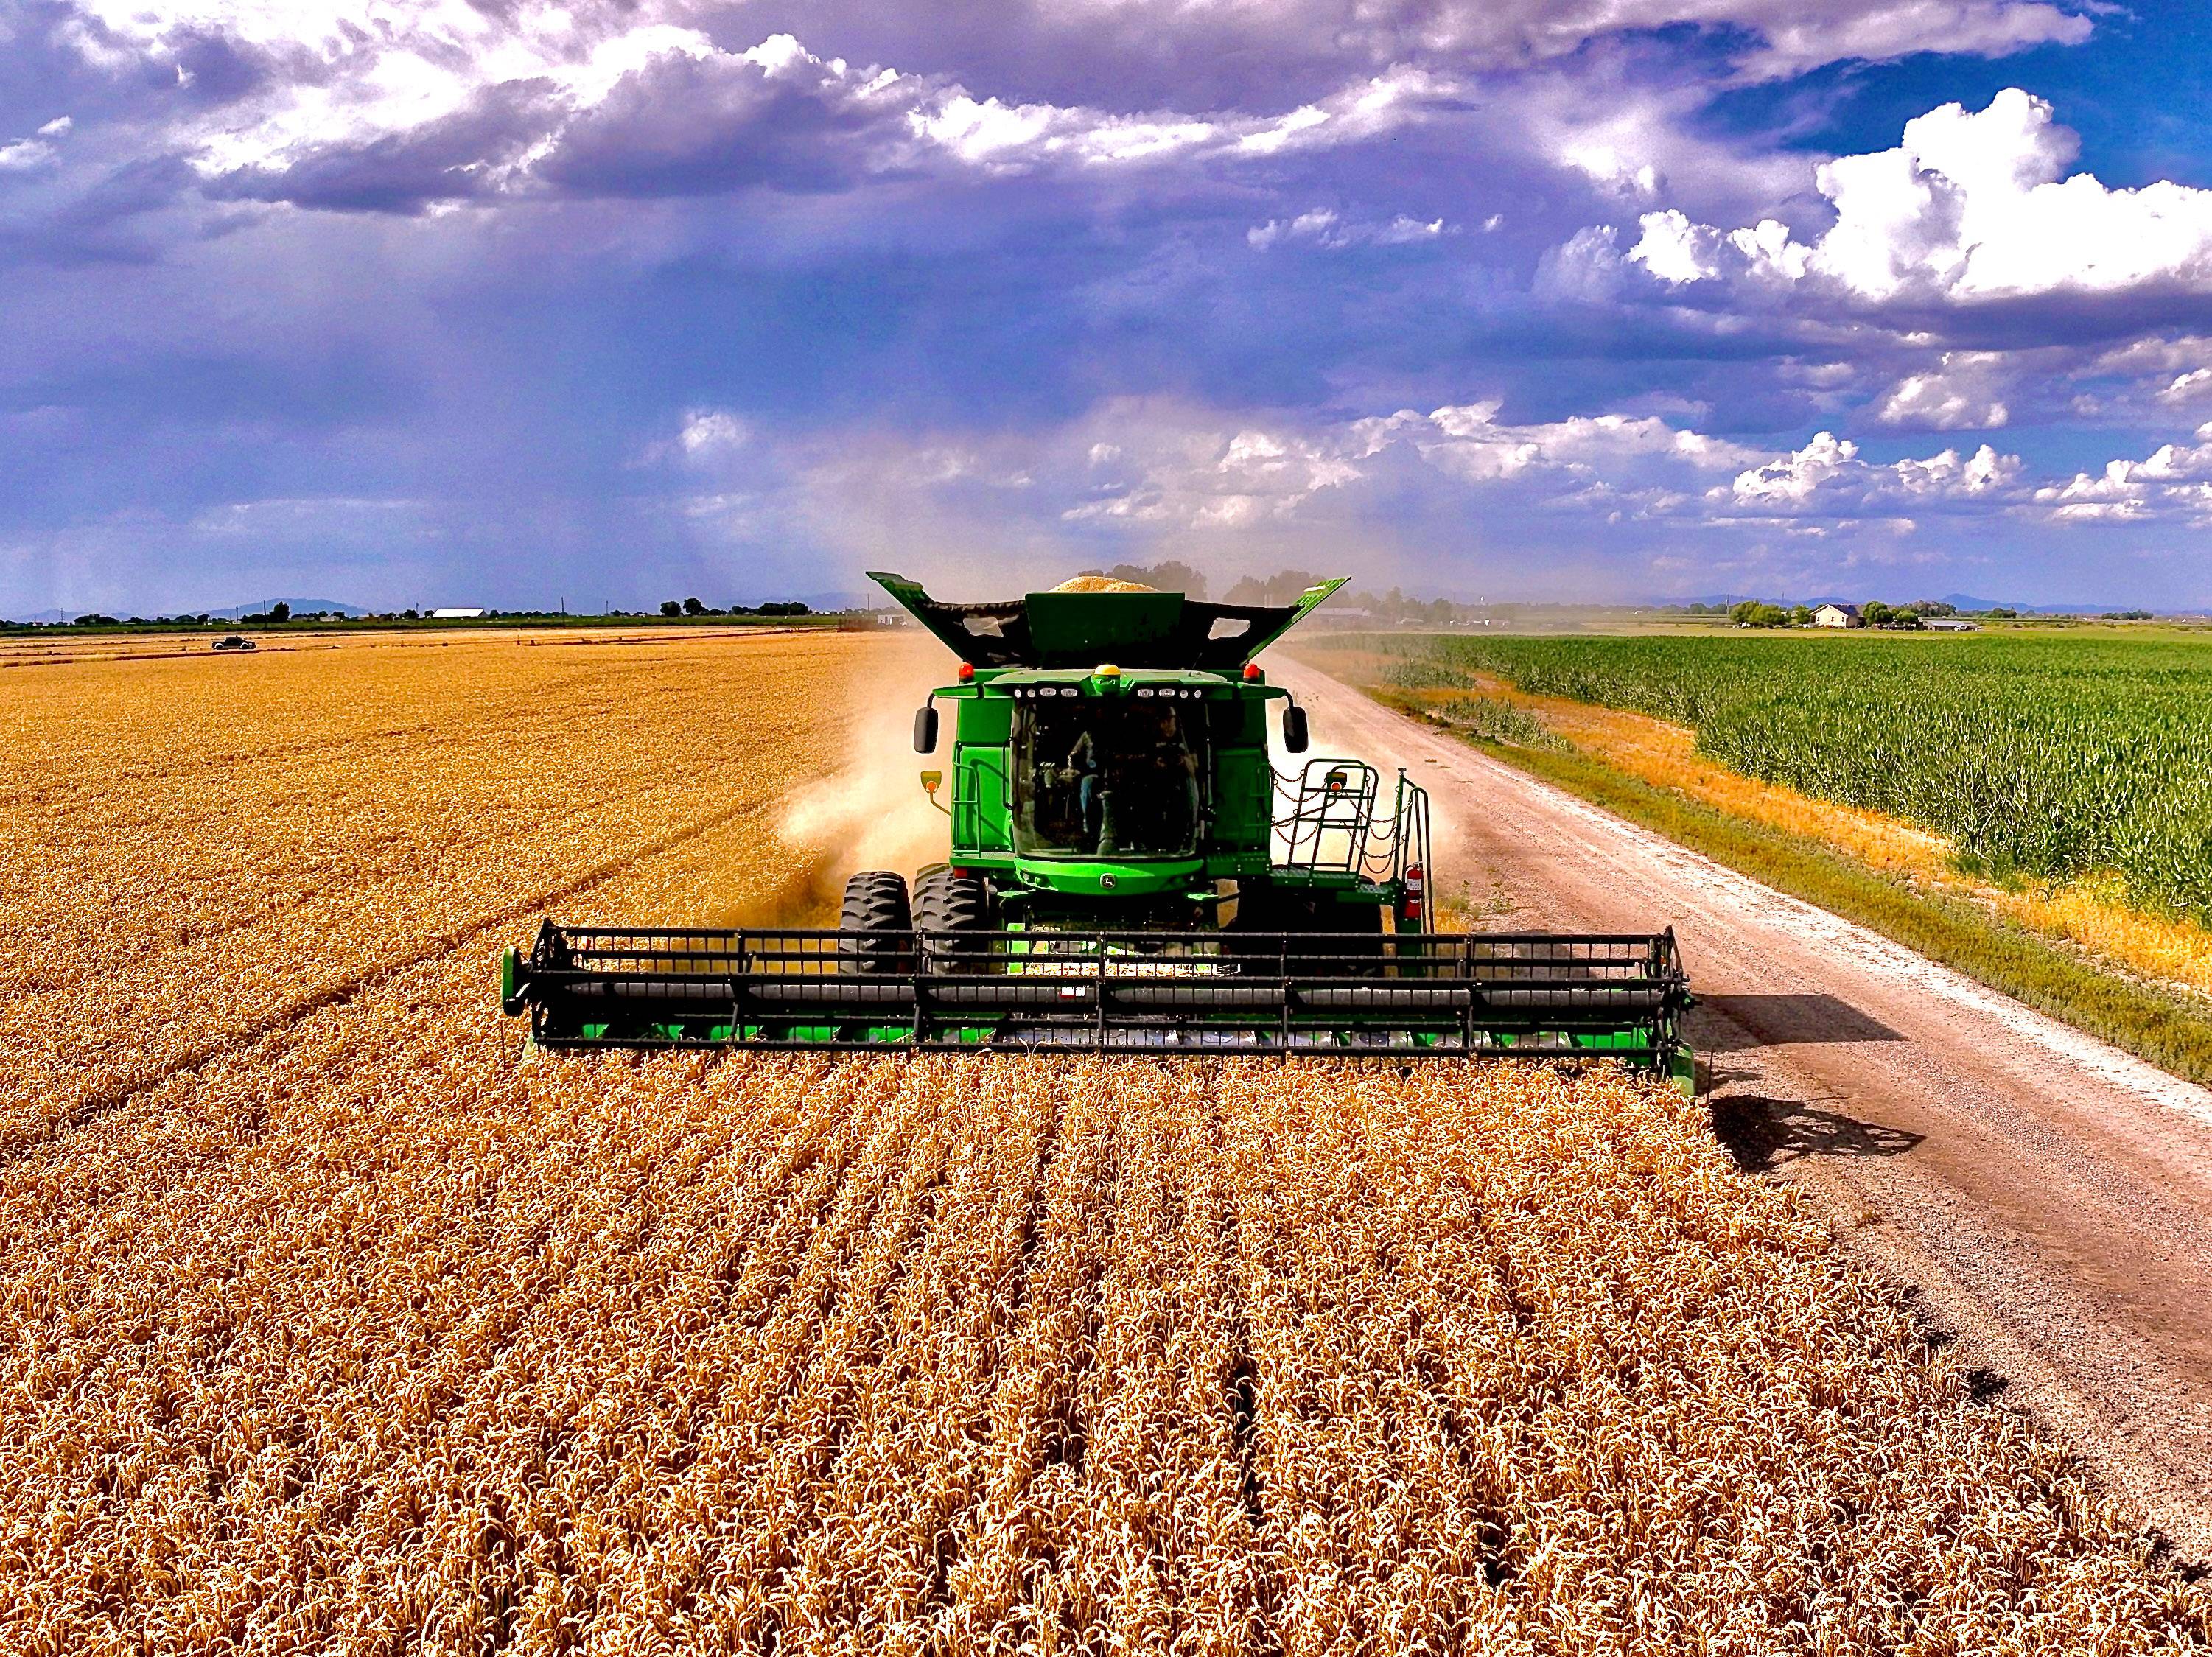 Tractor plowing wheat field